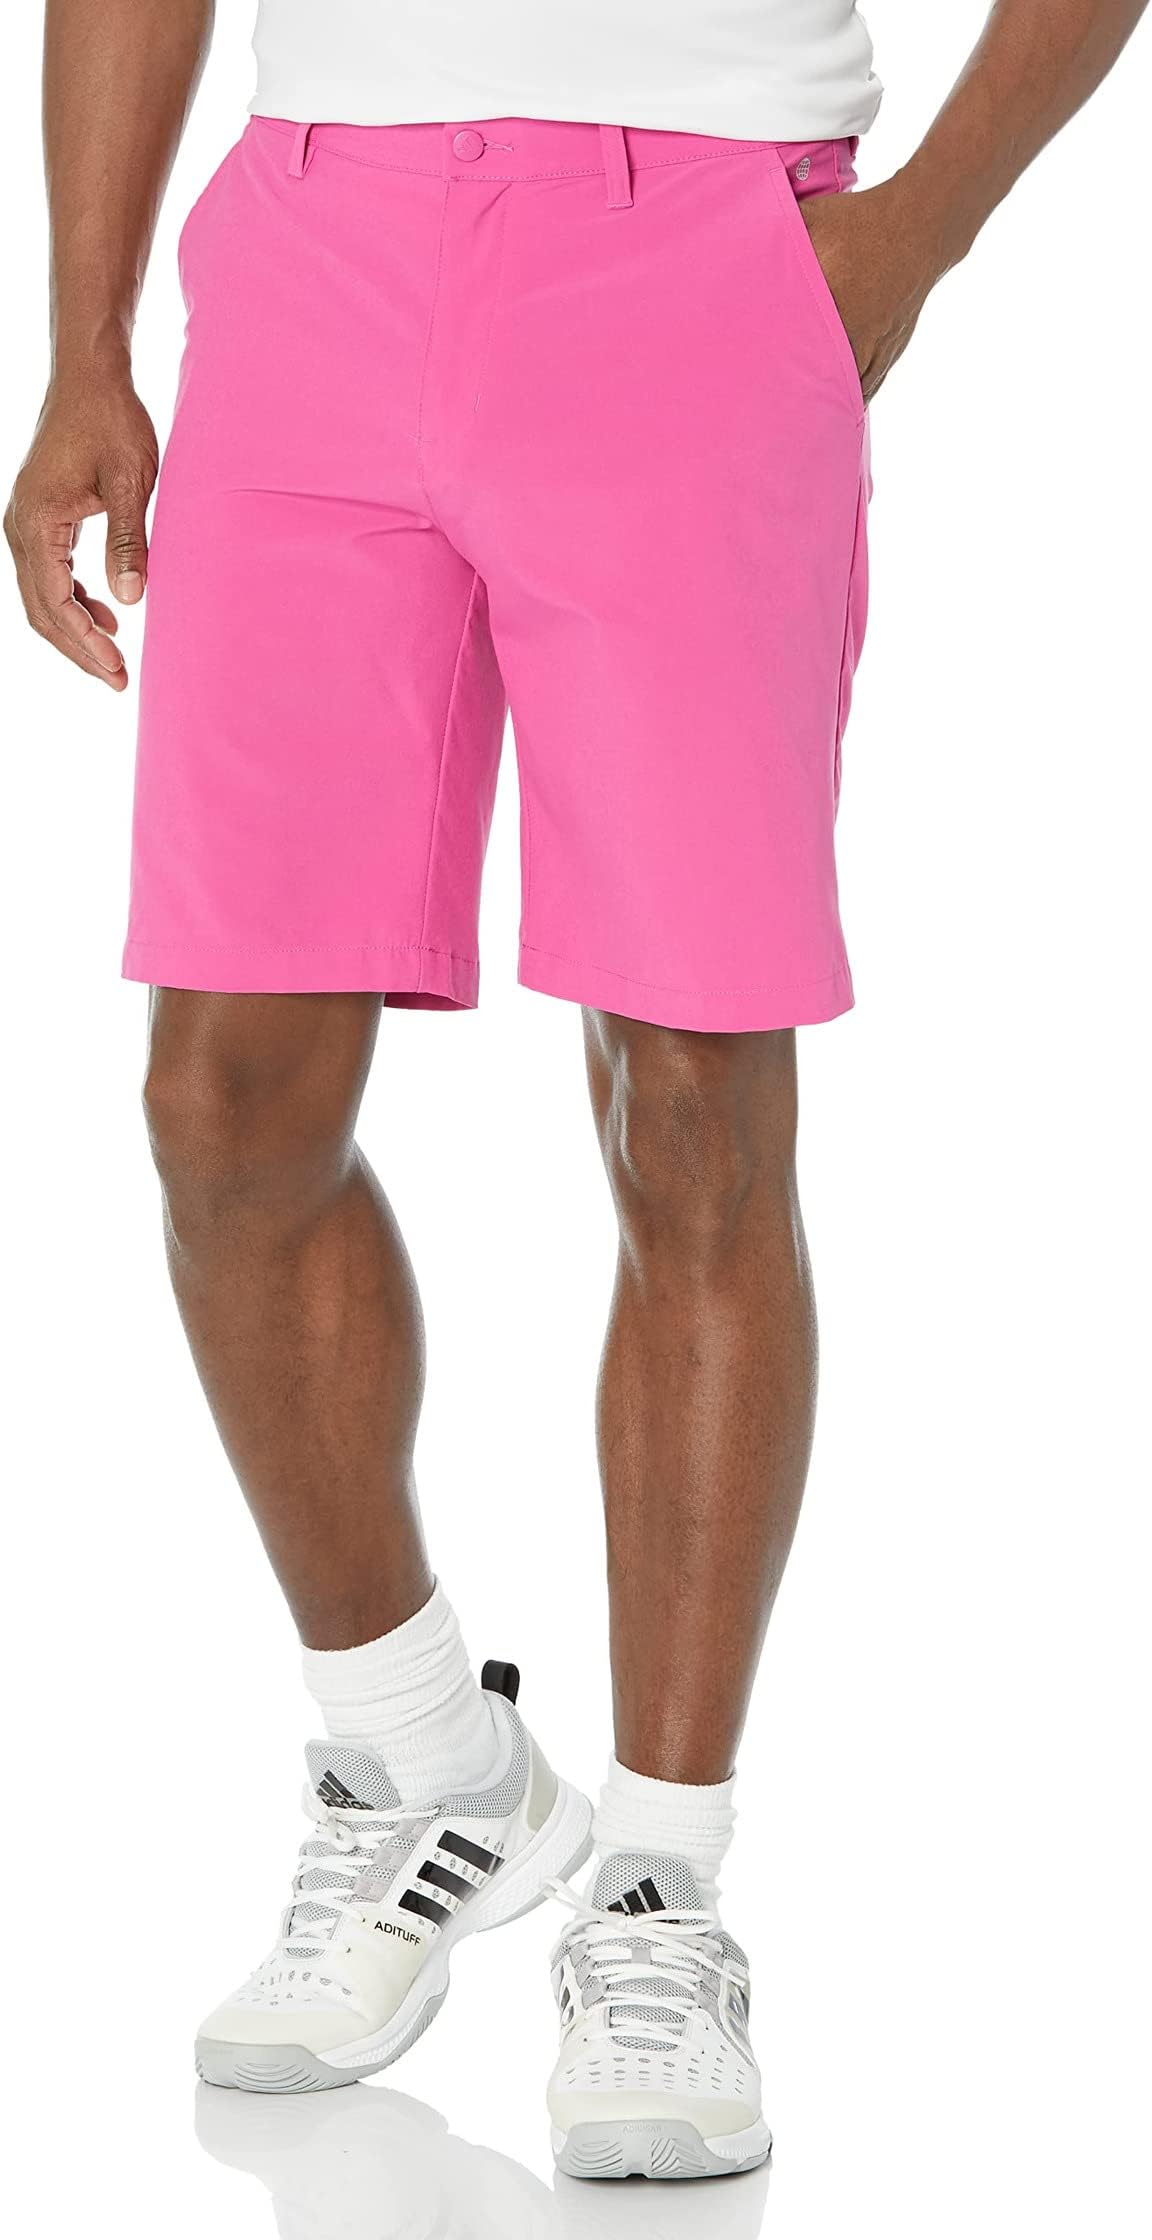 Шорты для гольфа Ultimate365 10 дюймов adidas, цвет Lucid Fuchsia